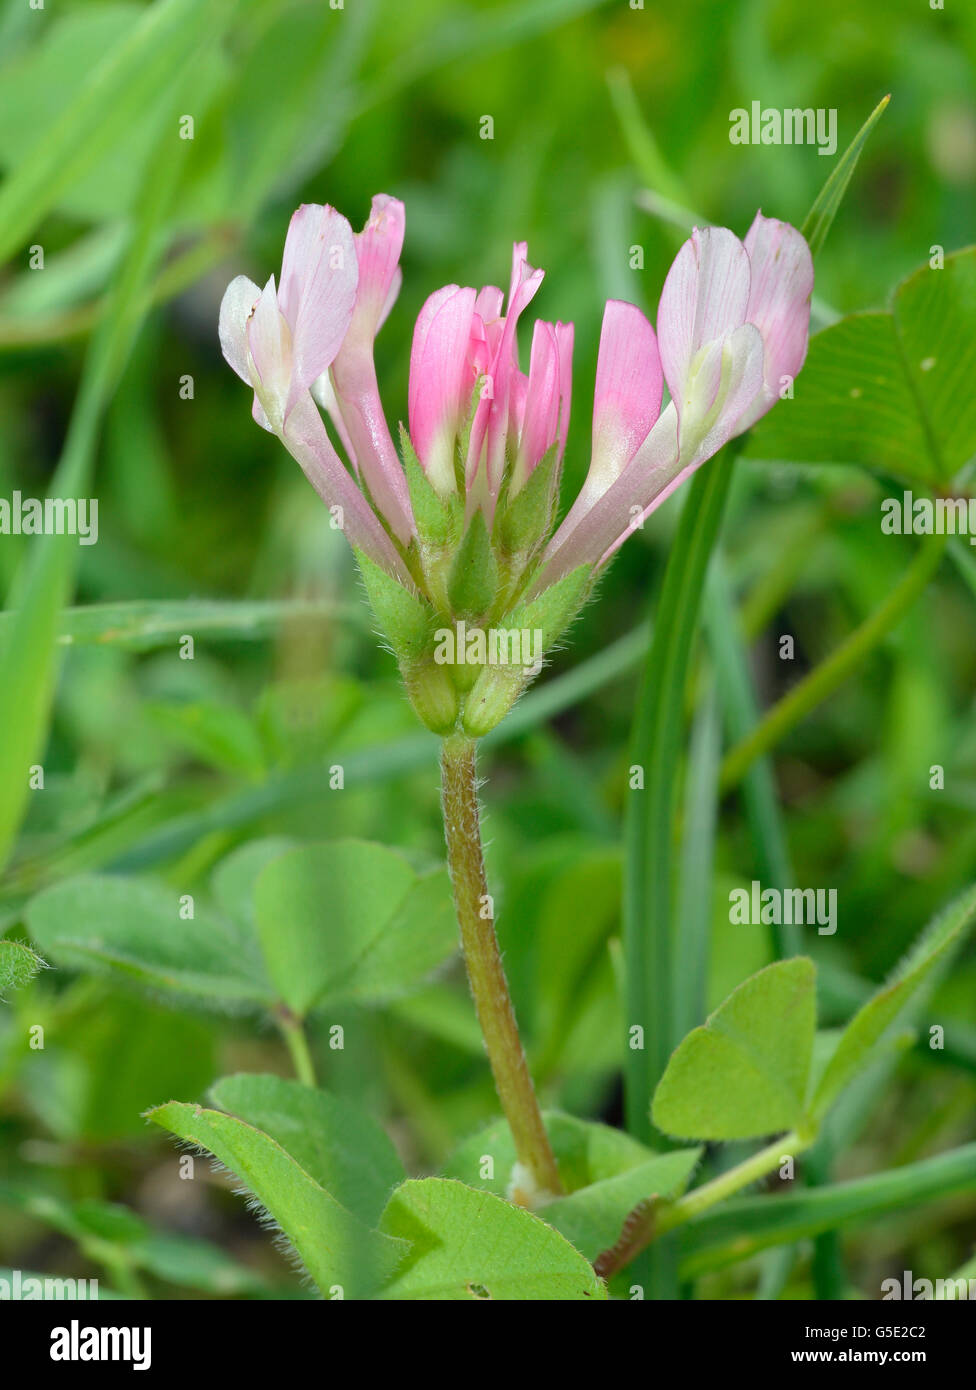 Flor silvestre comun fotografías e imágenes de alta resolución - Alamy